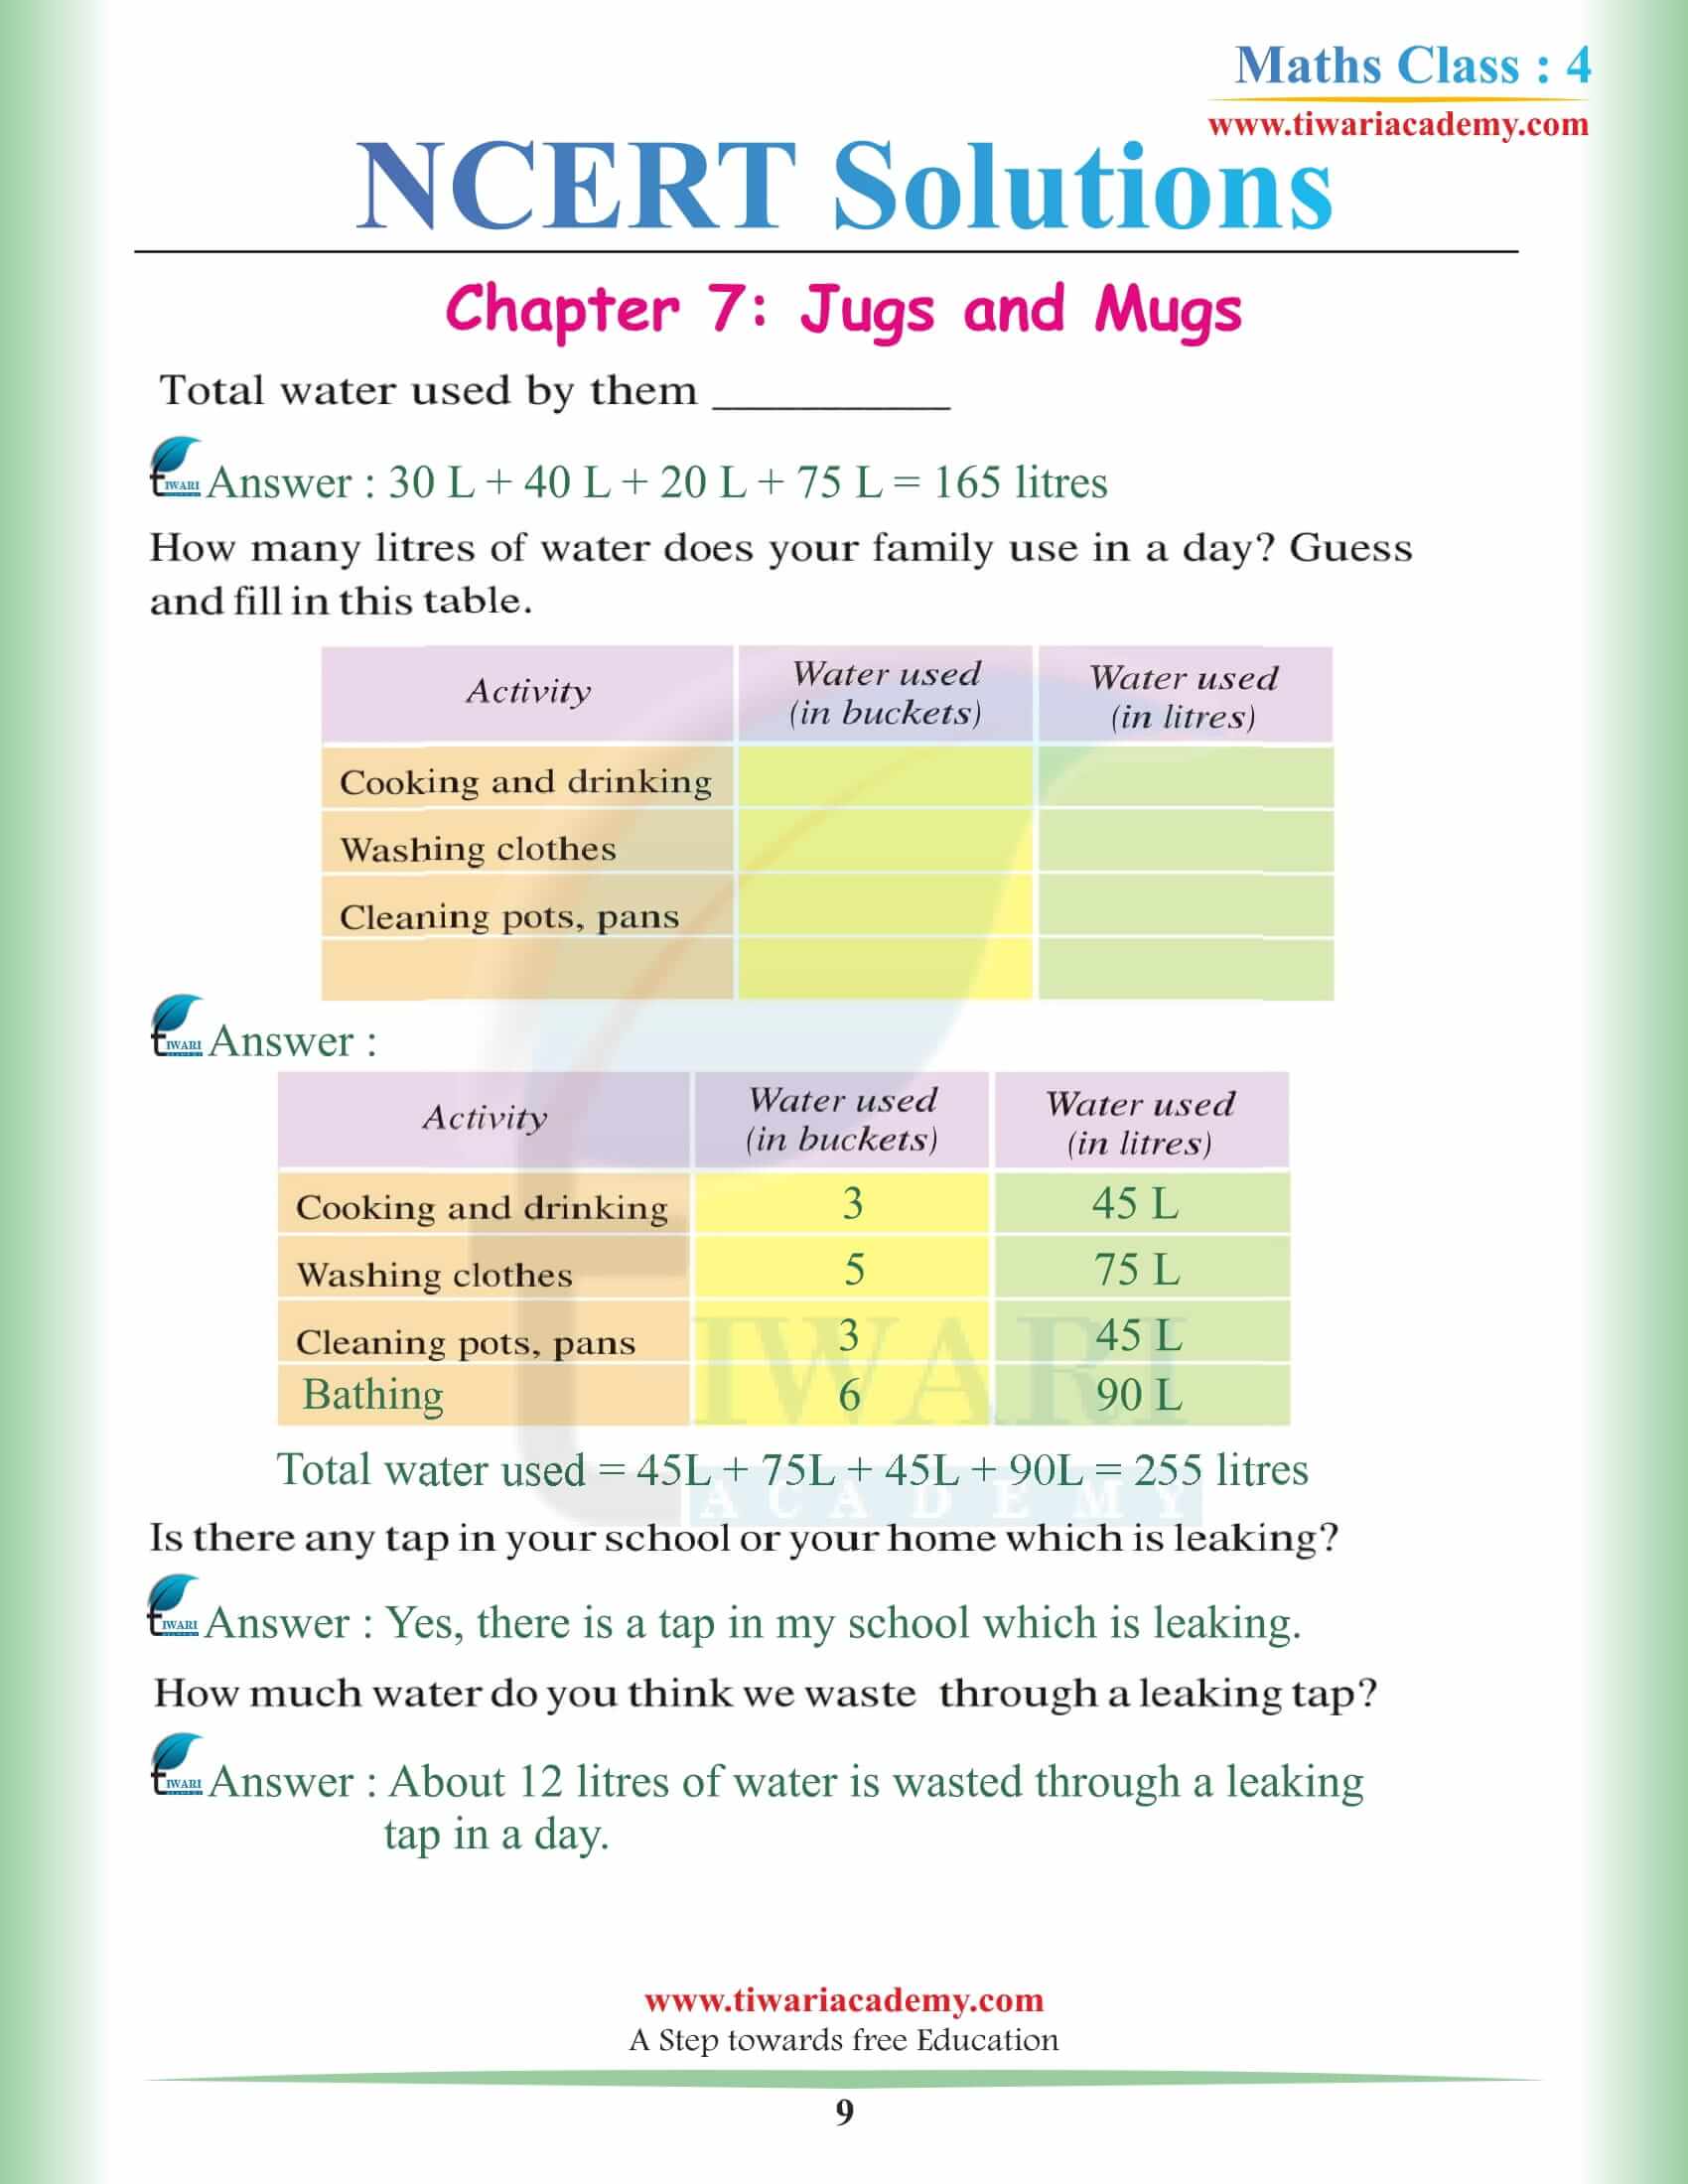 Class 4 Maths NCERT Chapter 7 Solutions PDF